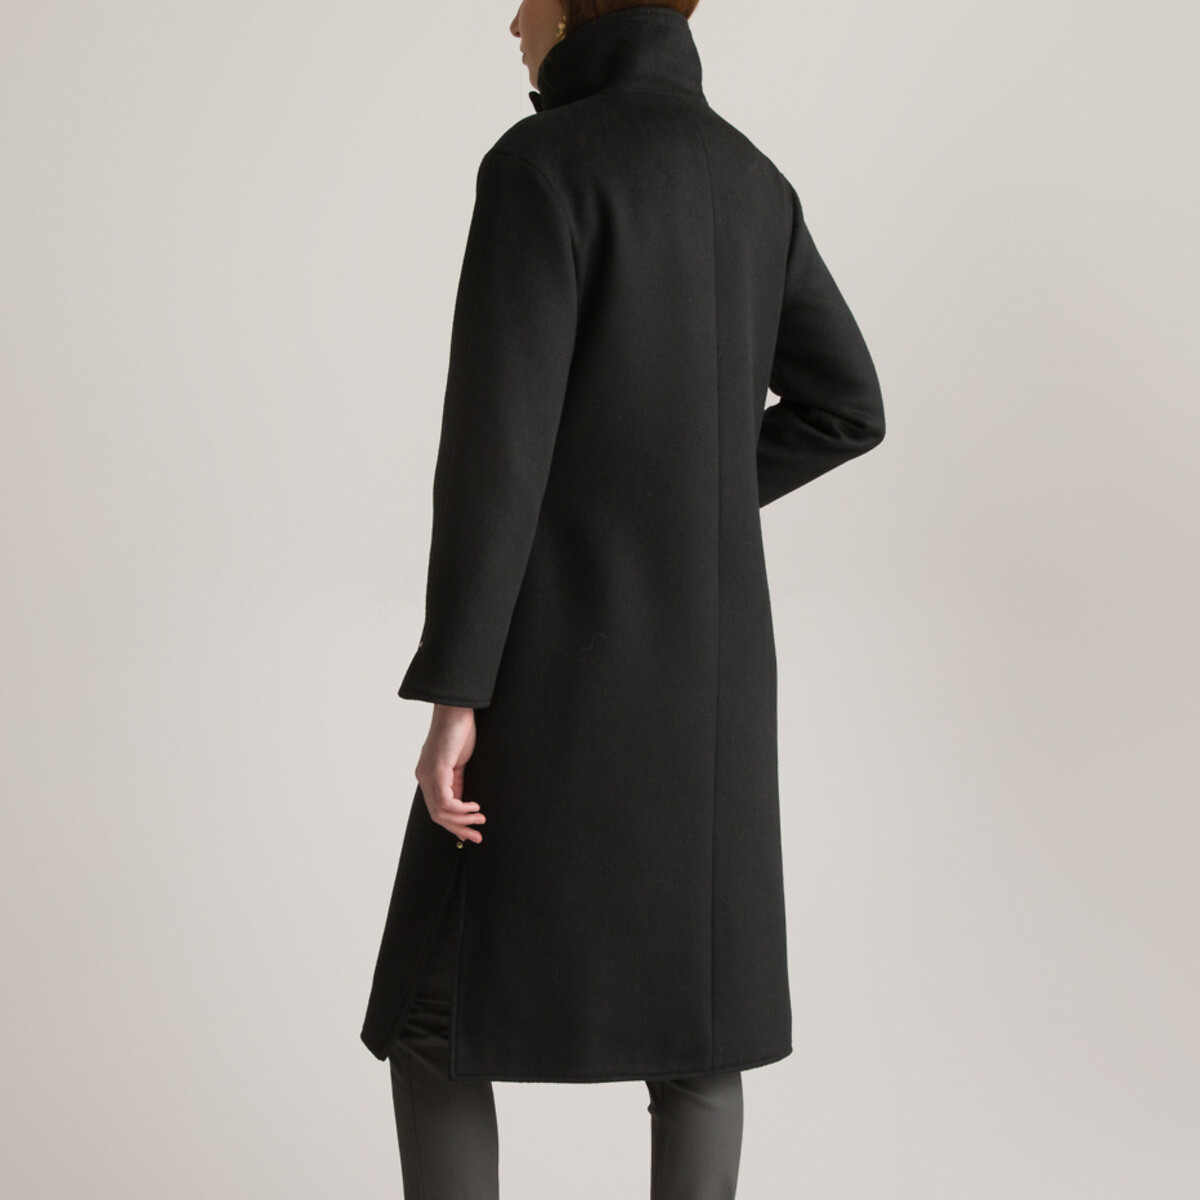 Пальто Длинное асимметричное с завязками 46 (FR) - 52 (RUS) черный LaRedoute, размер 46 (FR) - 52 (RUS) Пальто Длинное асимметричное с завязками 46 (FR) - 52 (RUS) черный - фото 4